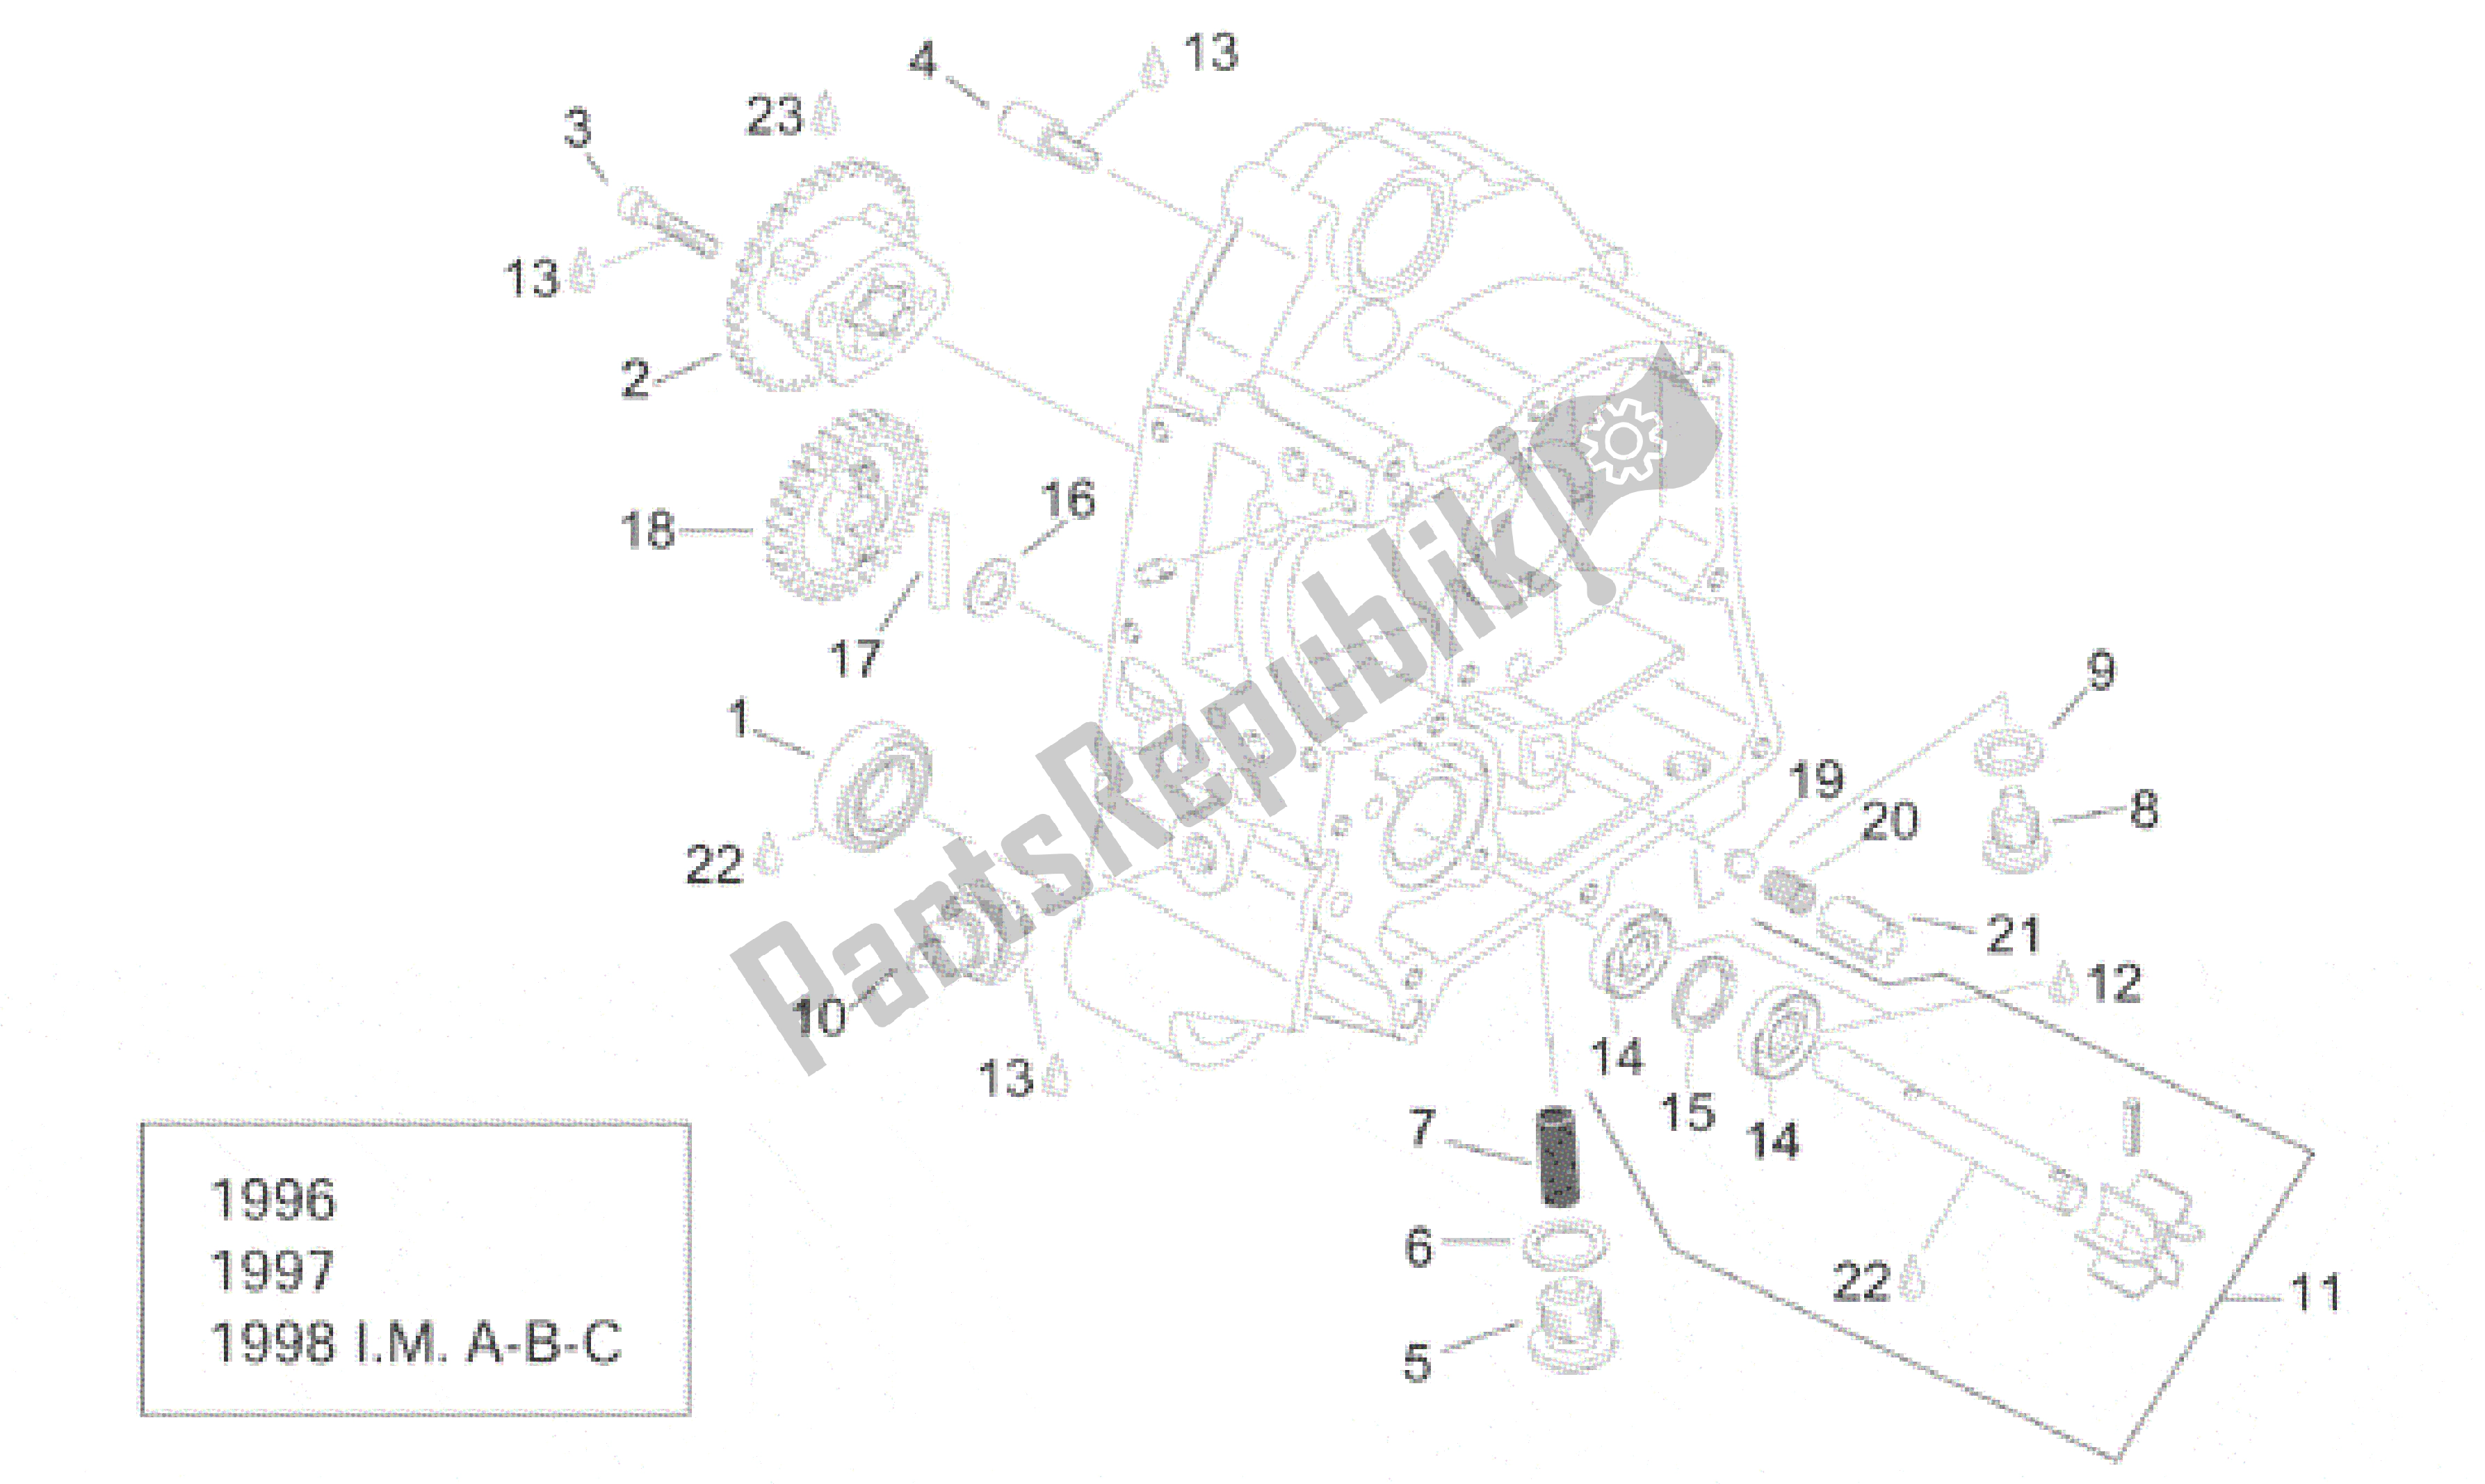 All parts for the Rh Semi-crankcase I of the Aprilia Leonardo 125 1996 - 1998